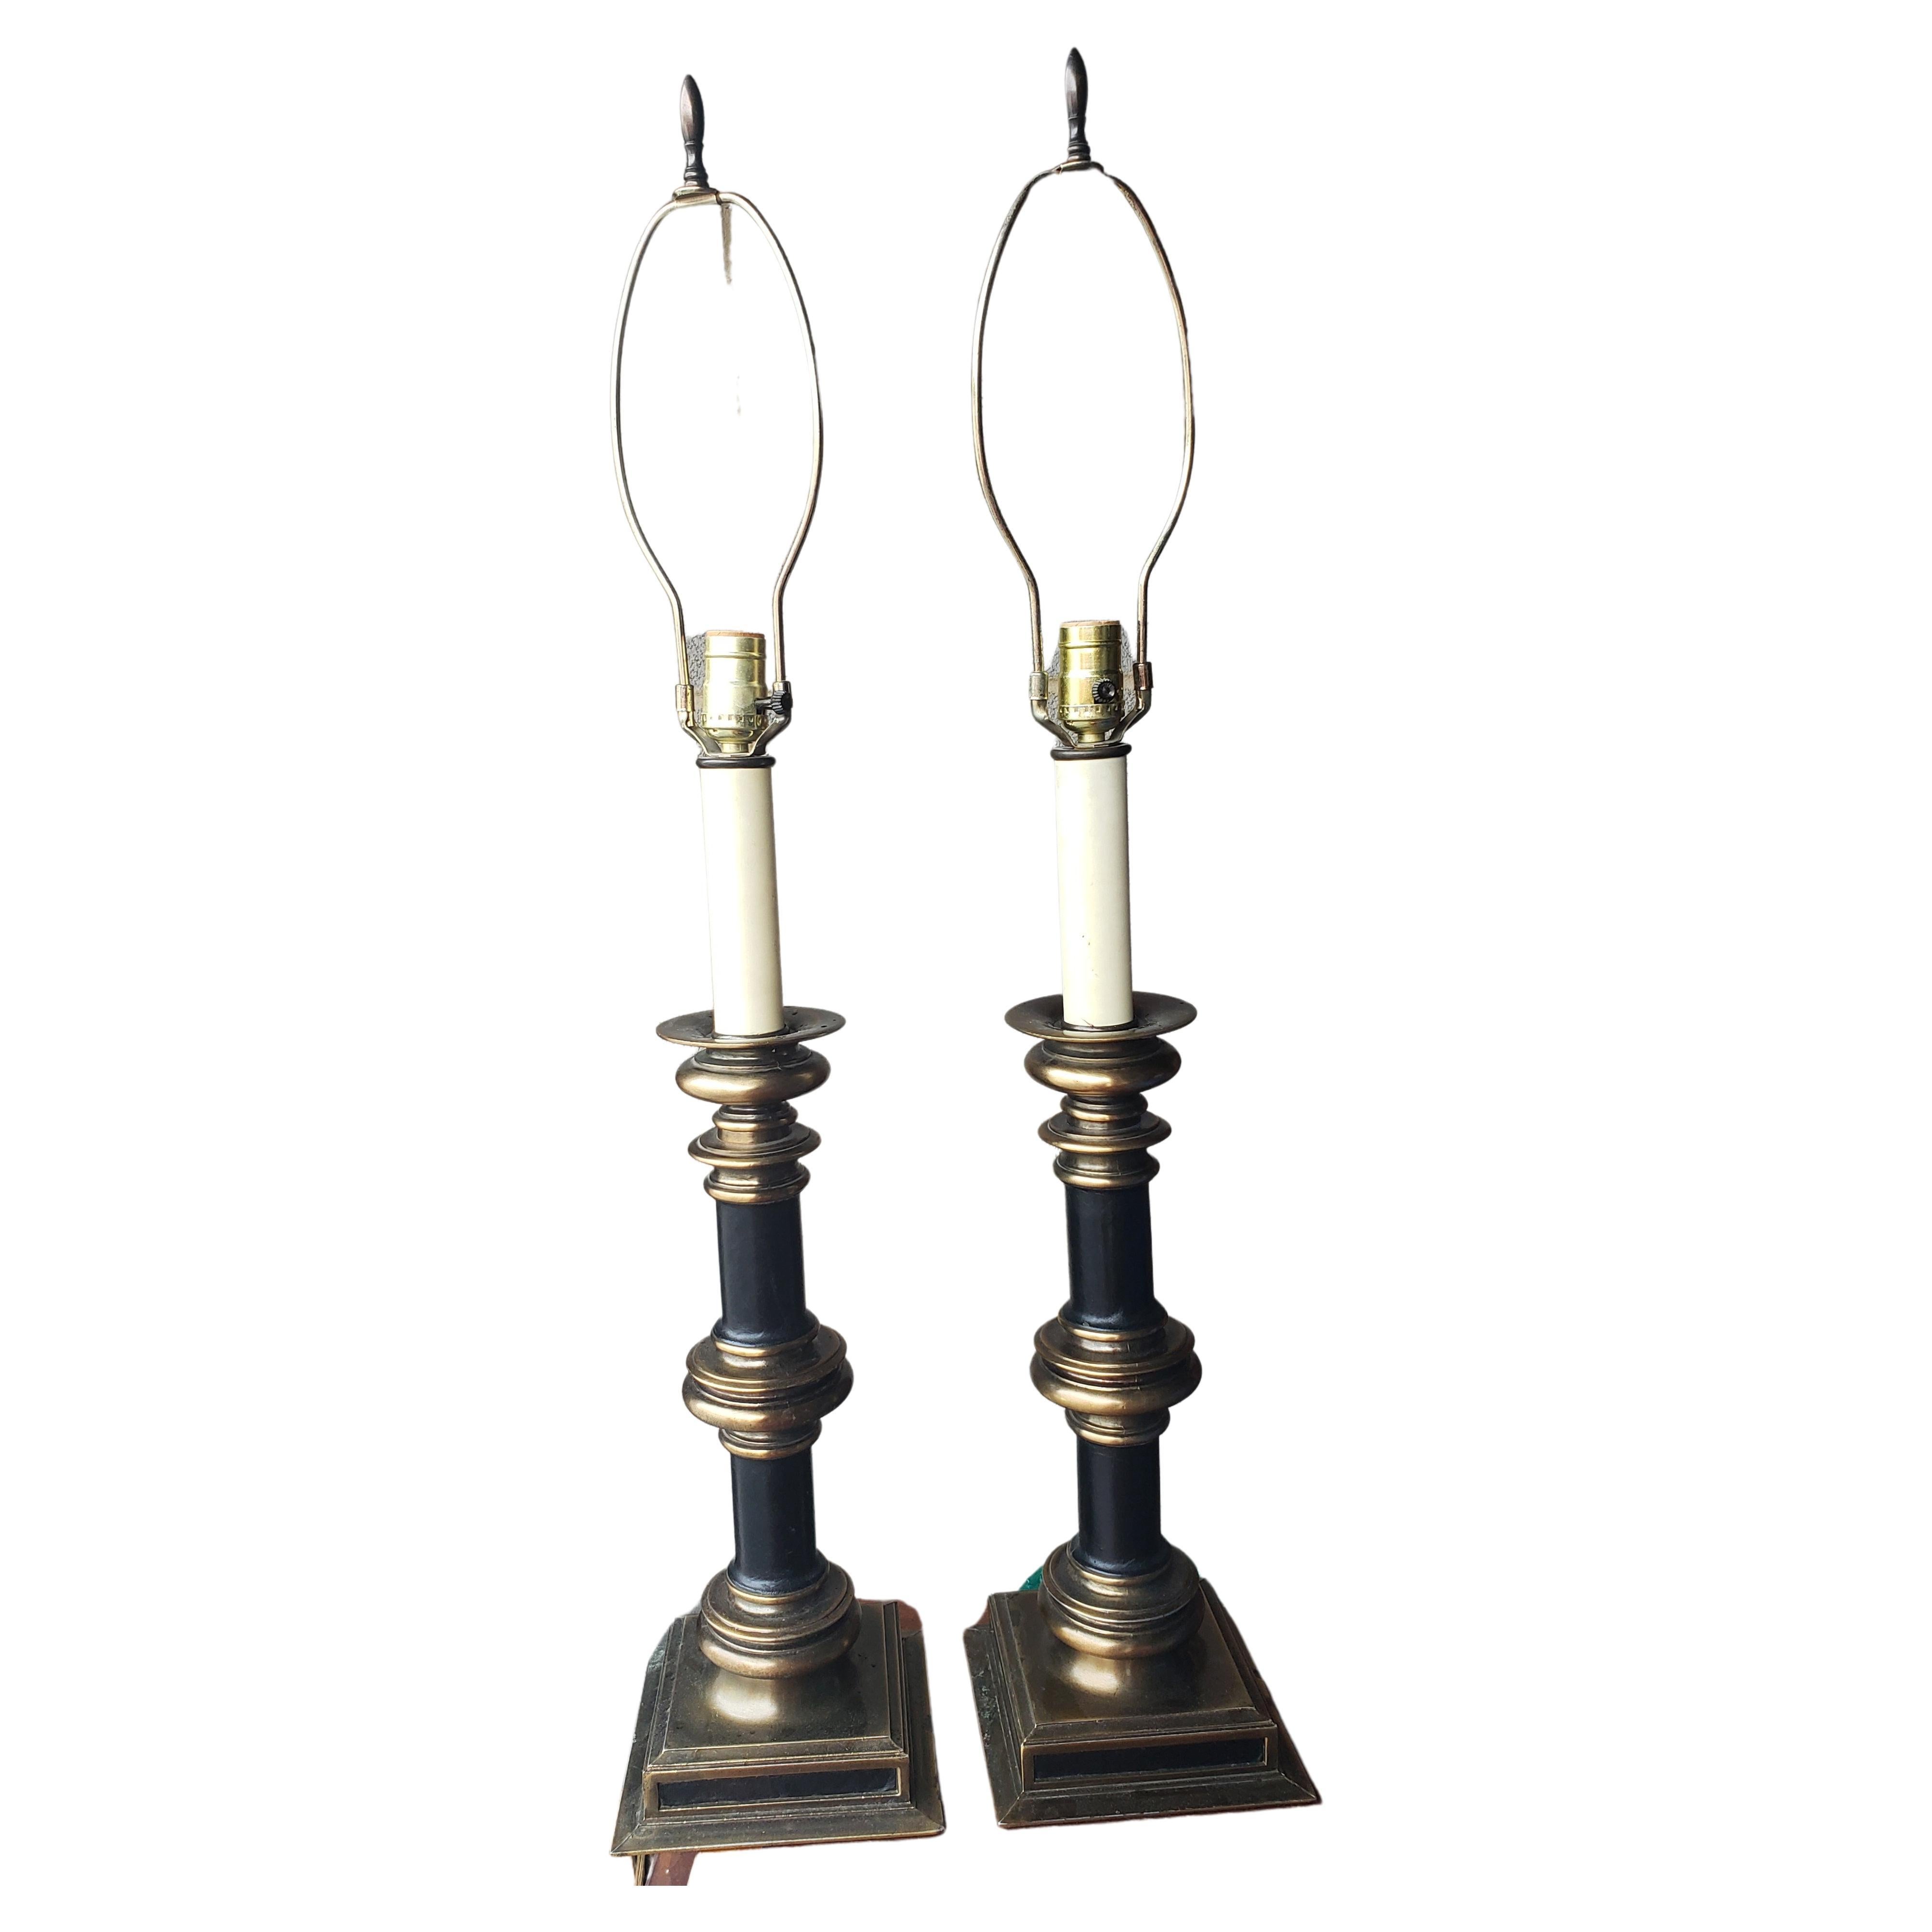 Une fabuleuse paire de lampes de table à colonne de style Charles X en métal patiné et monté sur cuir noir.
Mesure 7